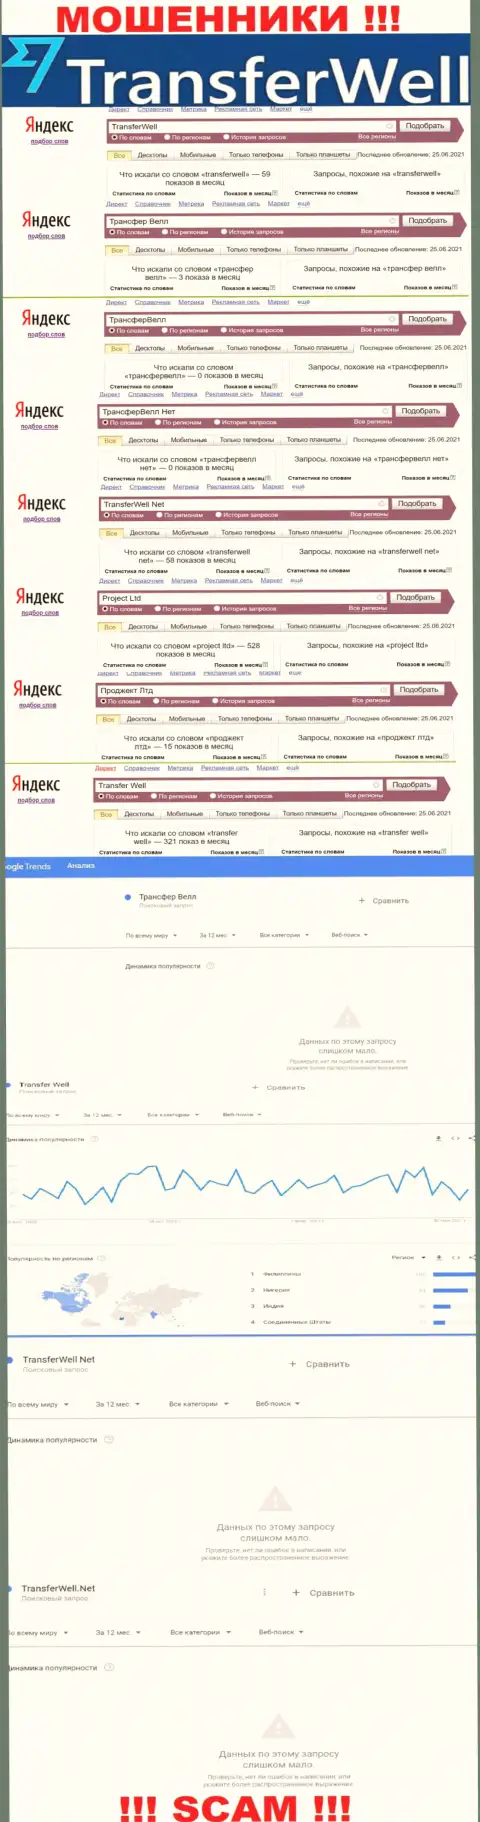 Количество поисковых запросов в поисковиках интернета по бренду махинаторов TransferWell